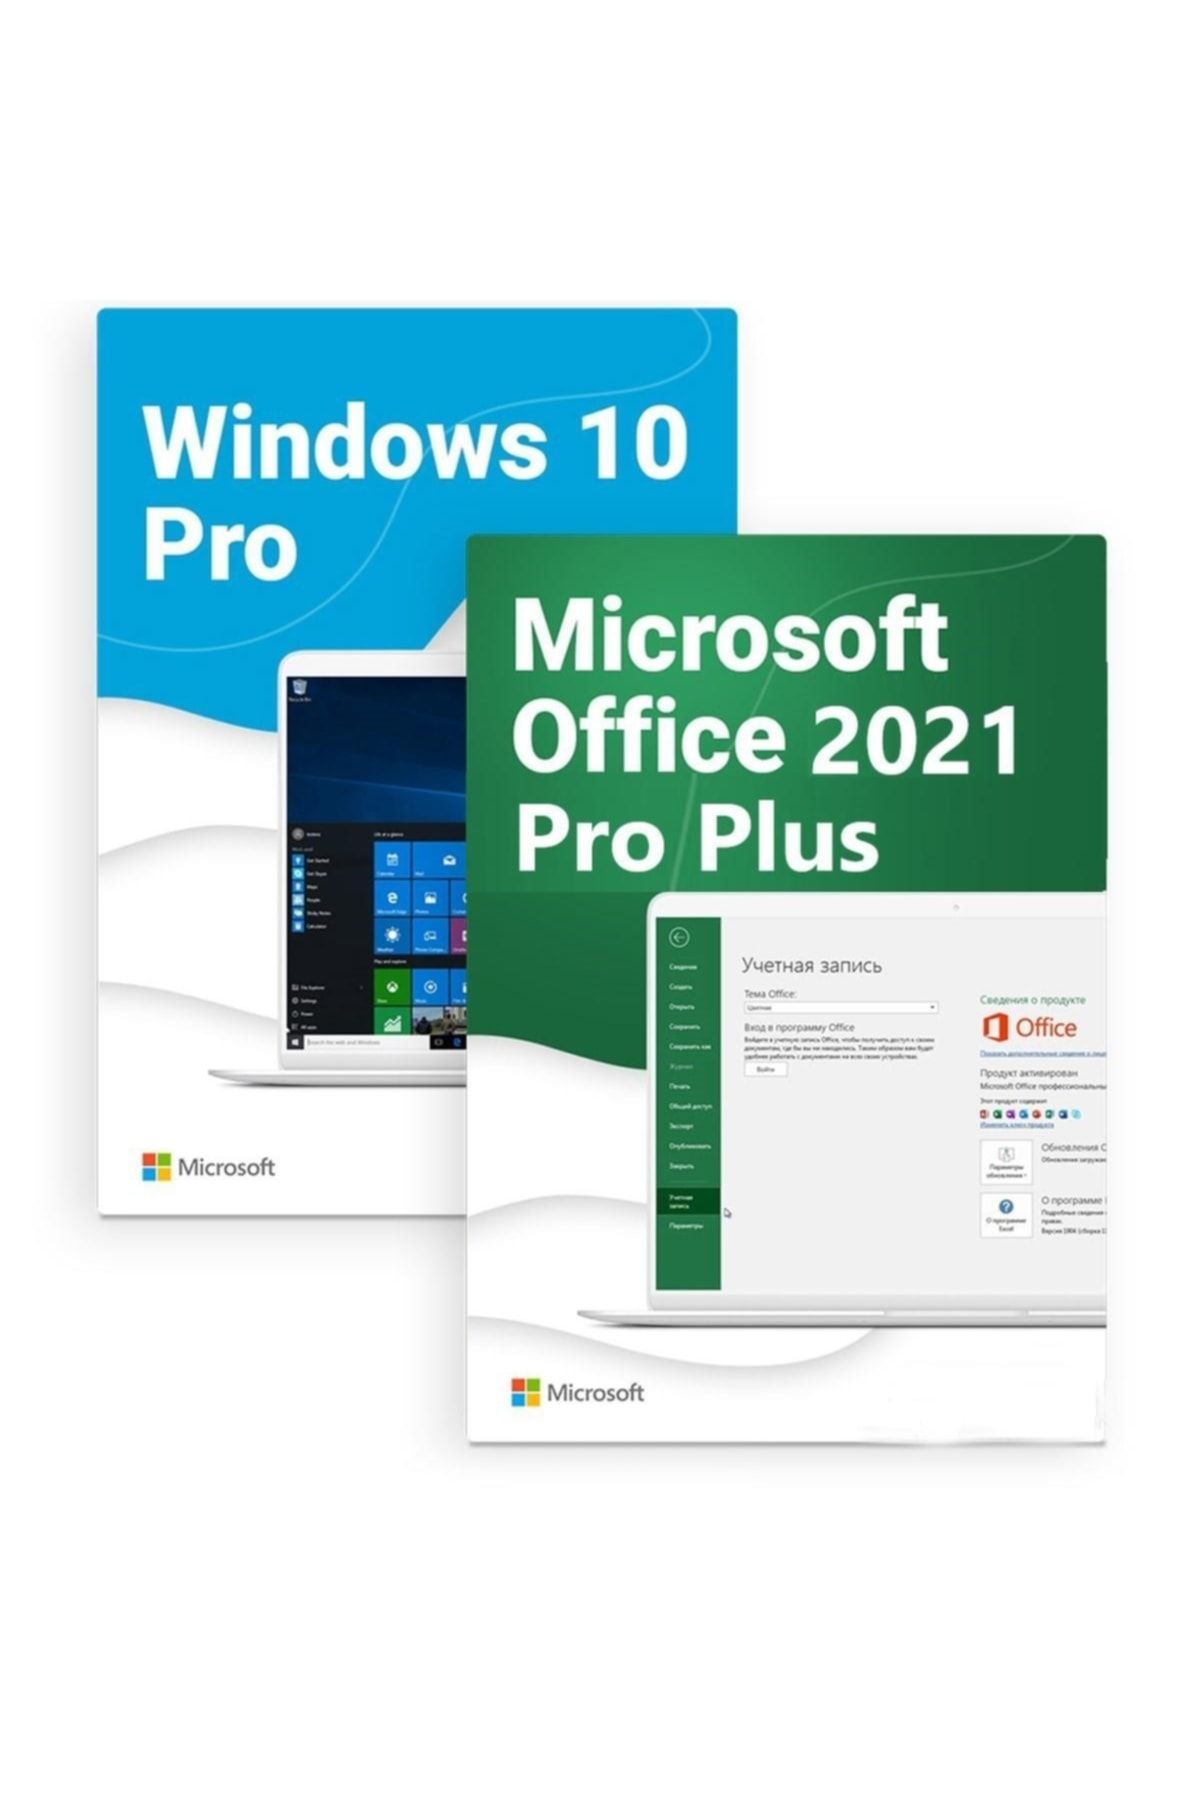 Microsoft Windows 10 Pro + Office 2021 Pro Plus